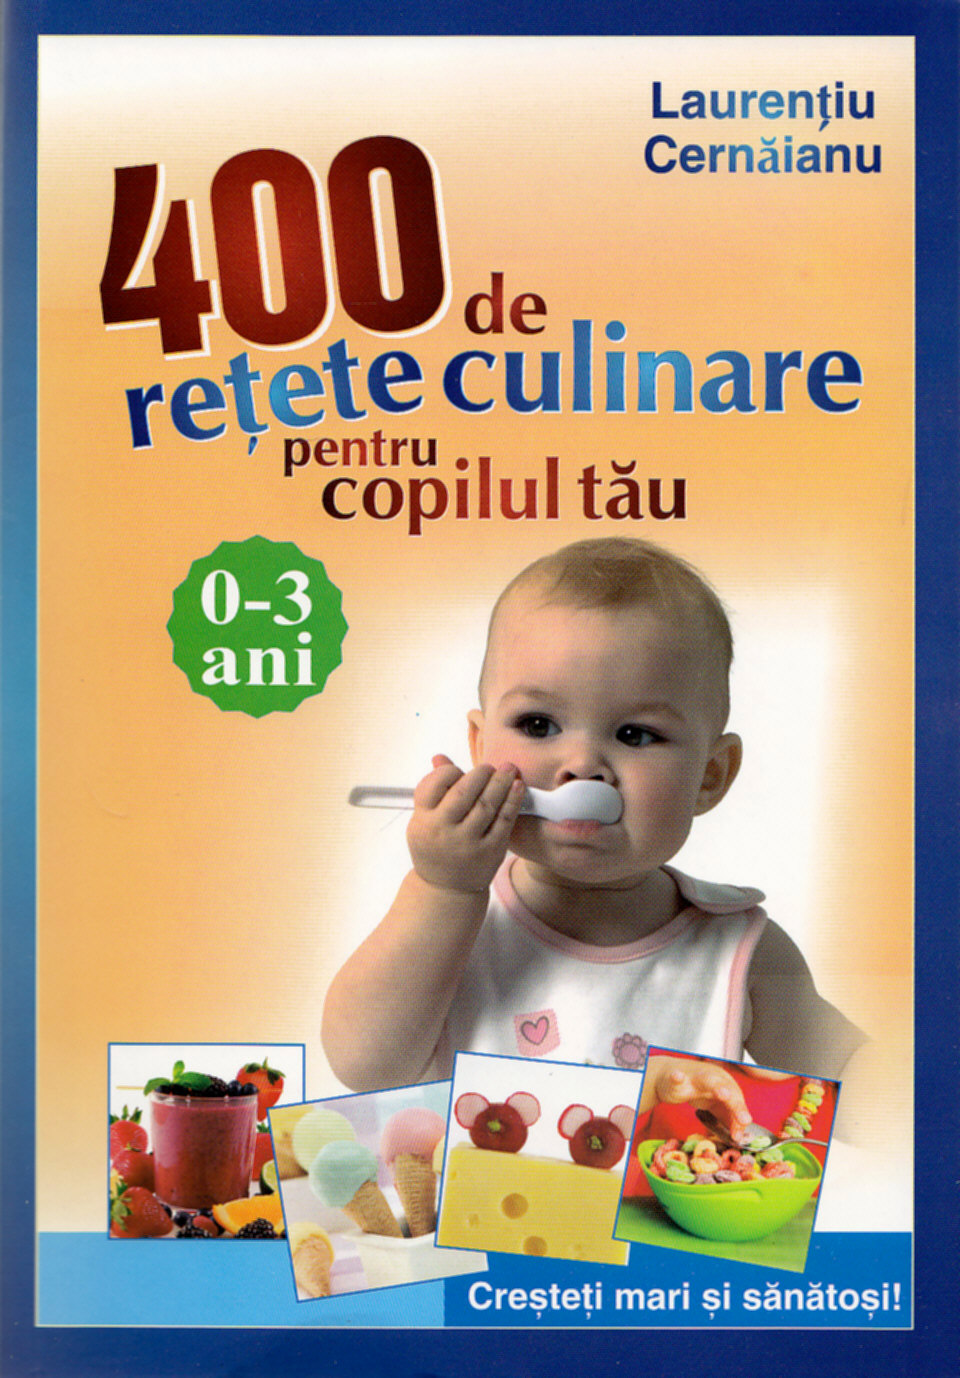 400 de retete culinare pentru copilul tau  0 - 3 ani ed. 3 - Laurentiu Cernaianu